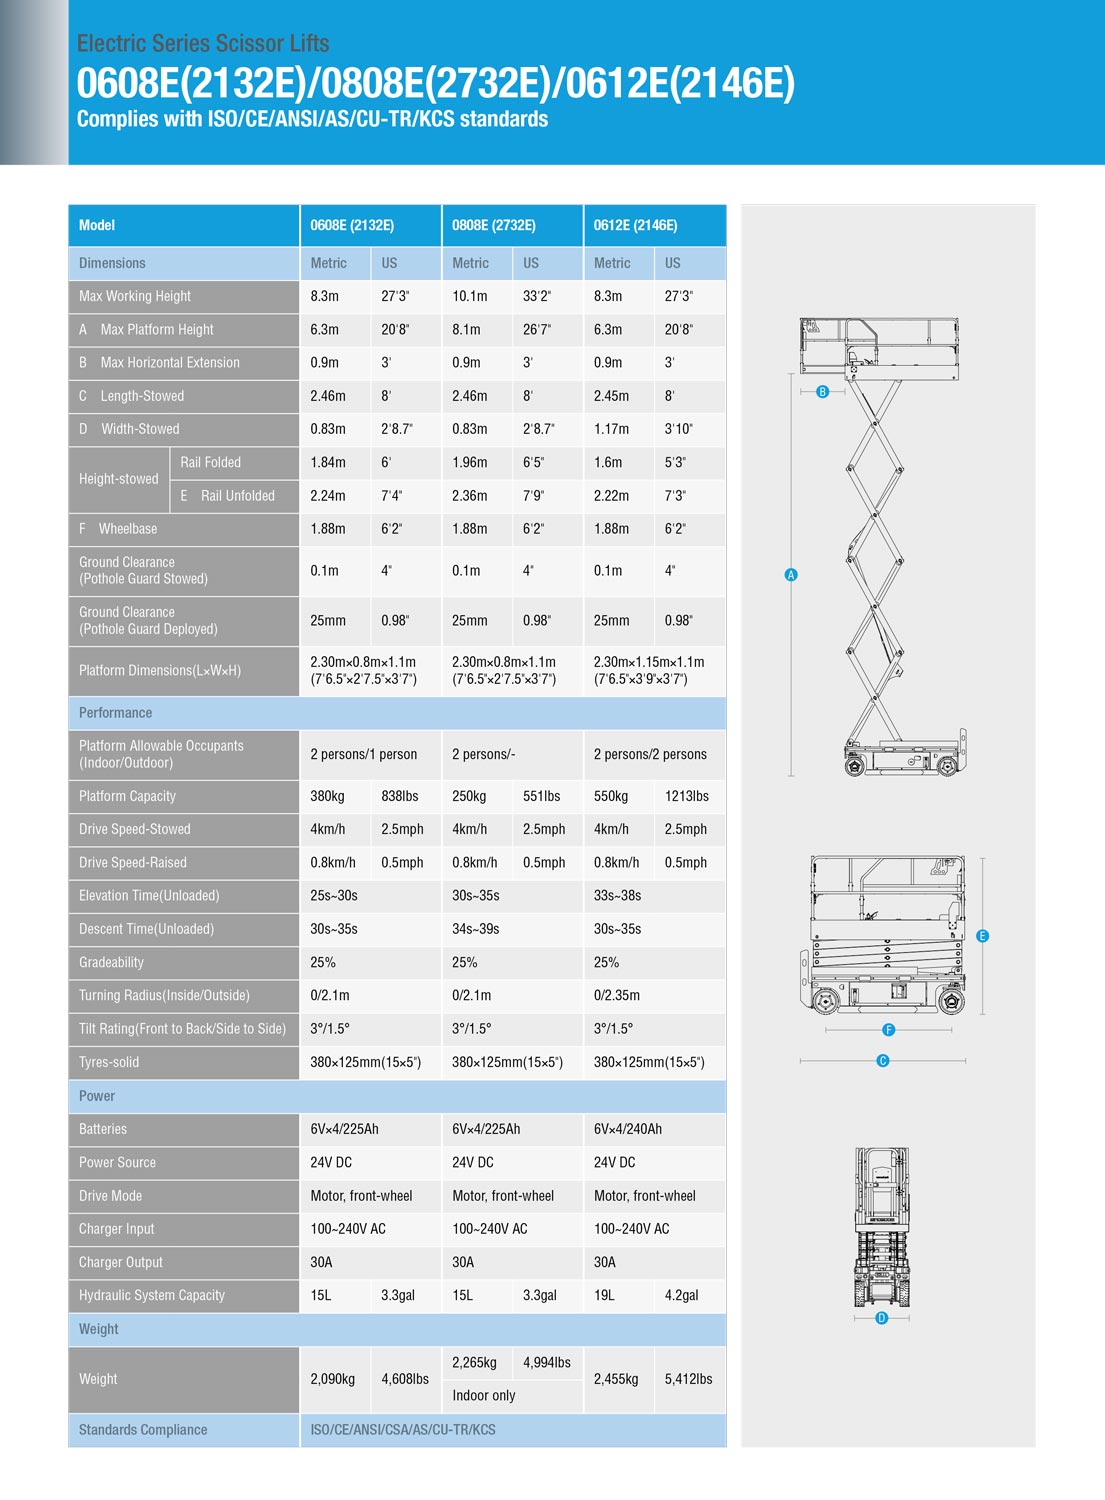 image of spec sheet for sinoboom 2732E lift